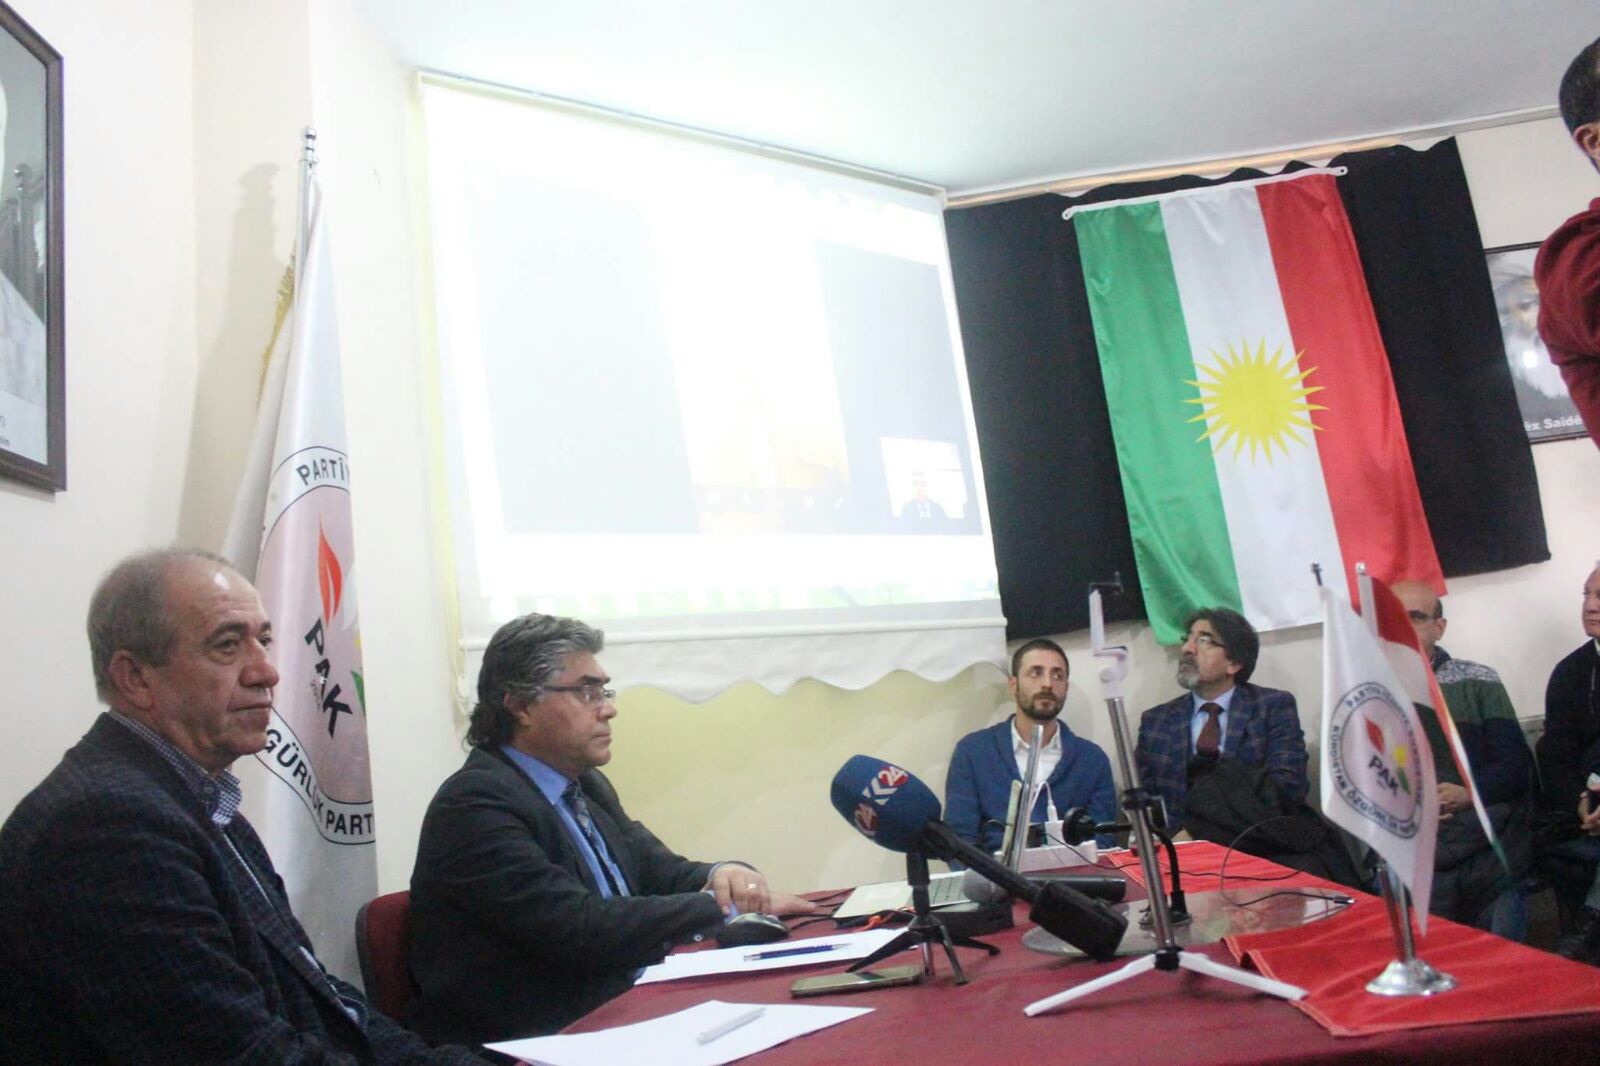 Özçelik: "Divê Alternatîfa Me ‘Bloka Kurdî’ Be!''